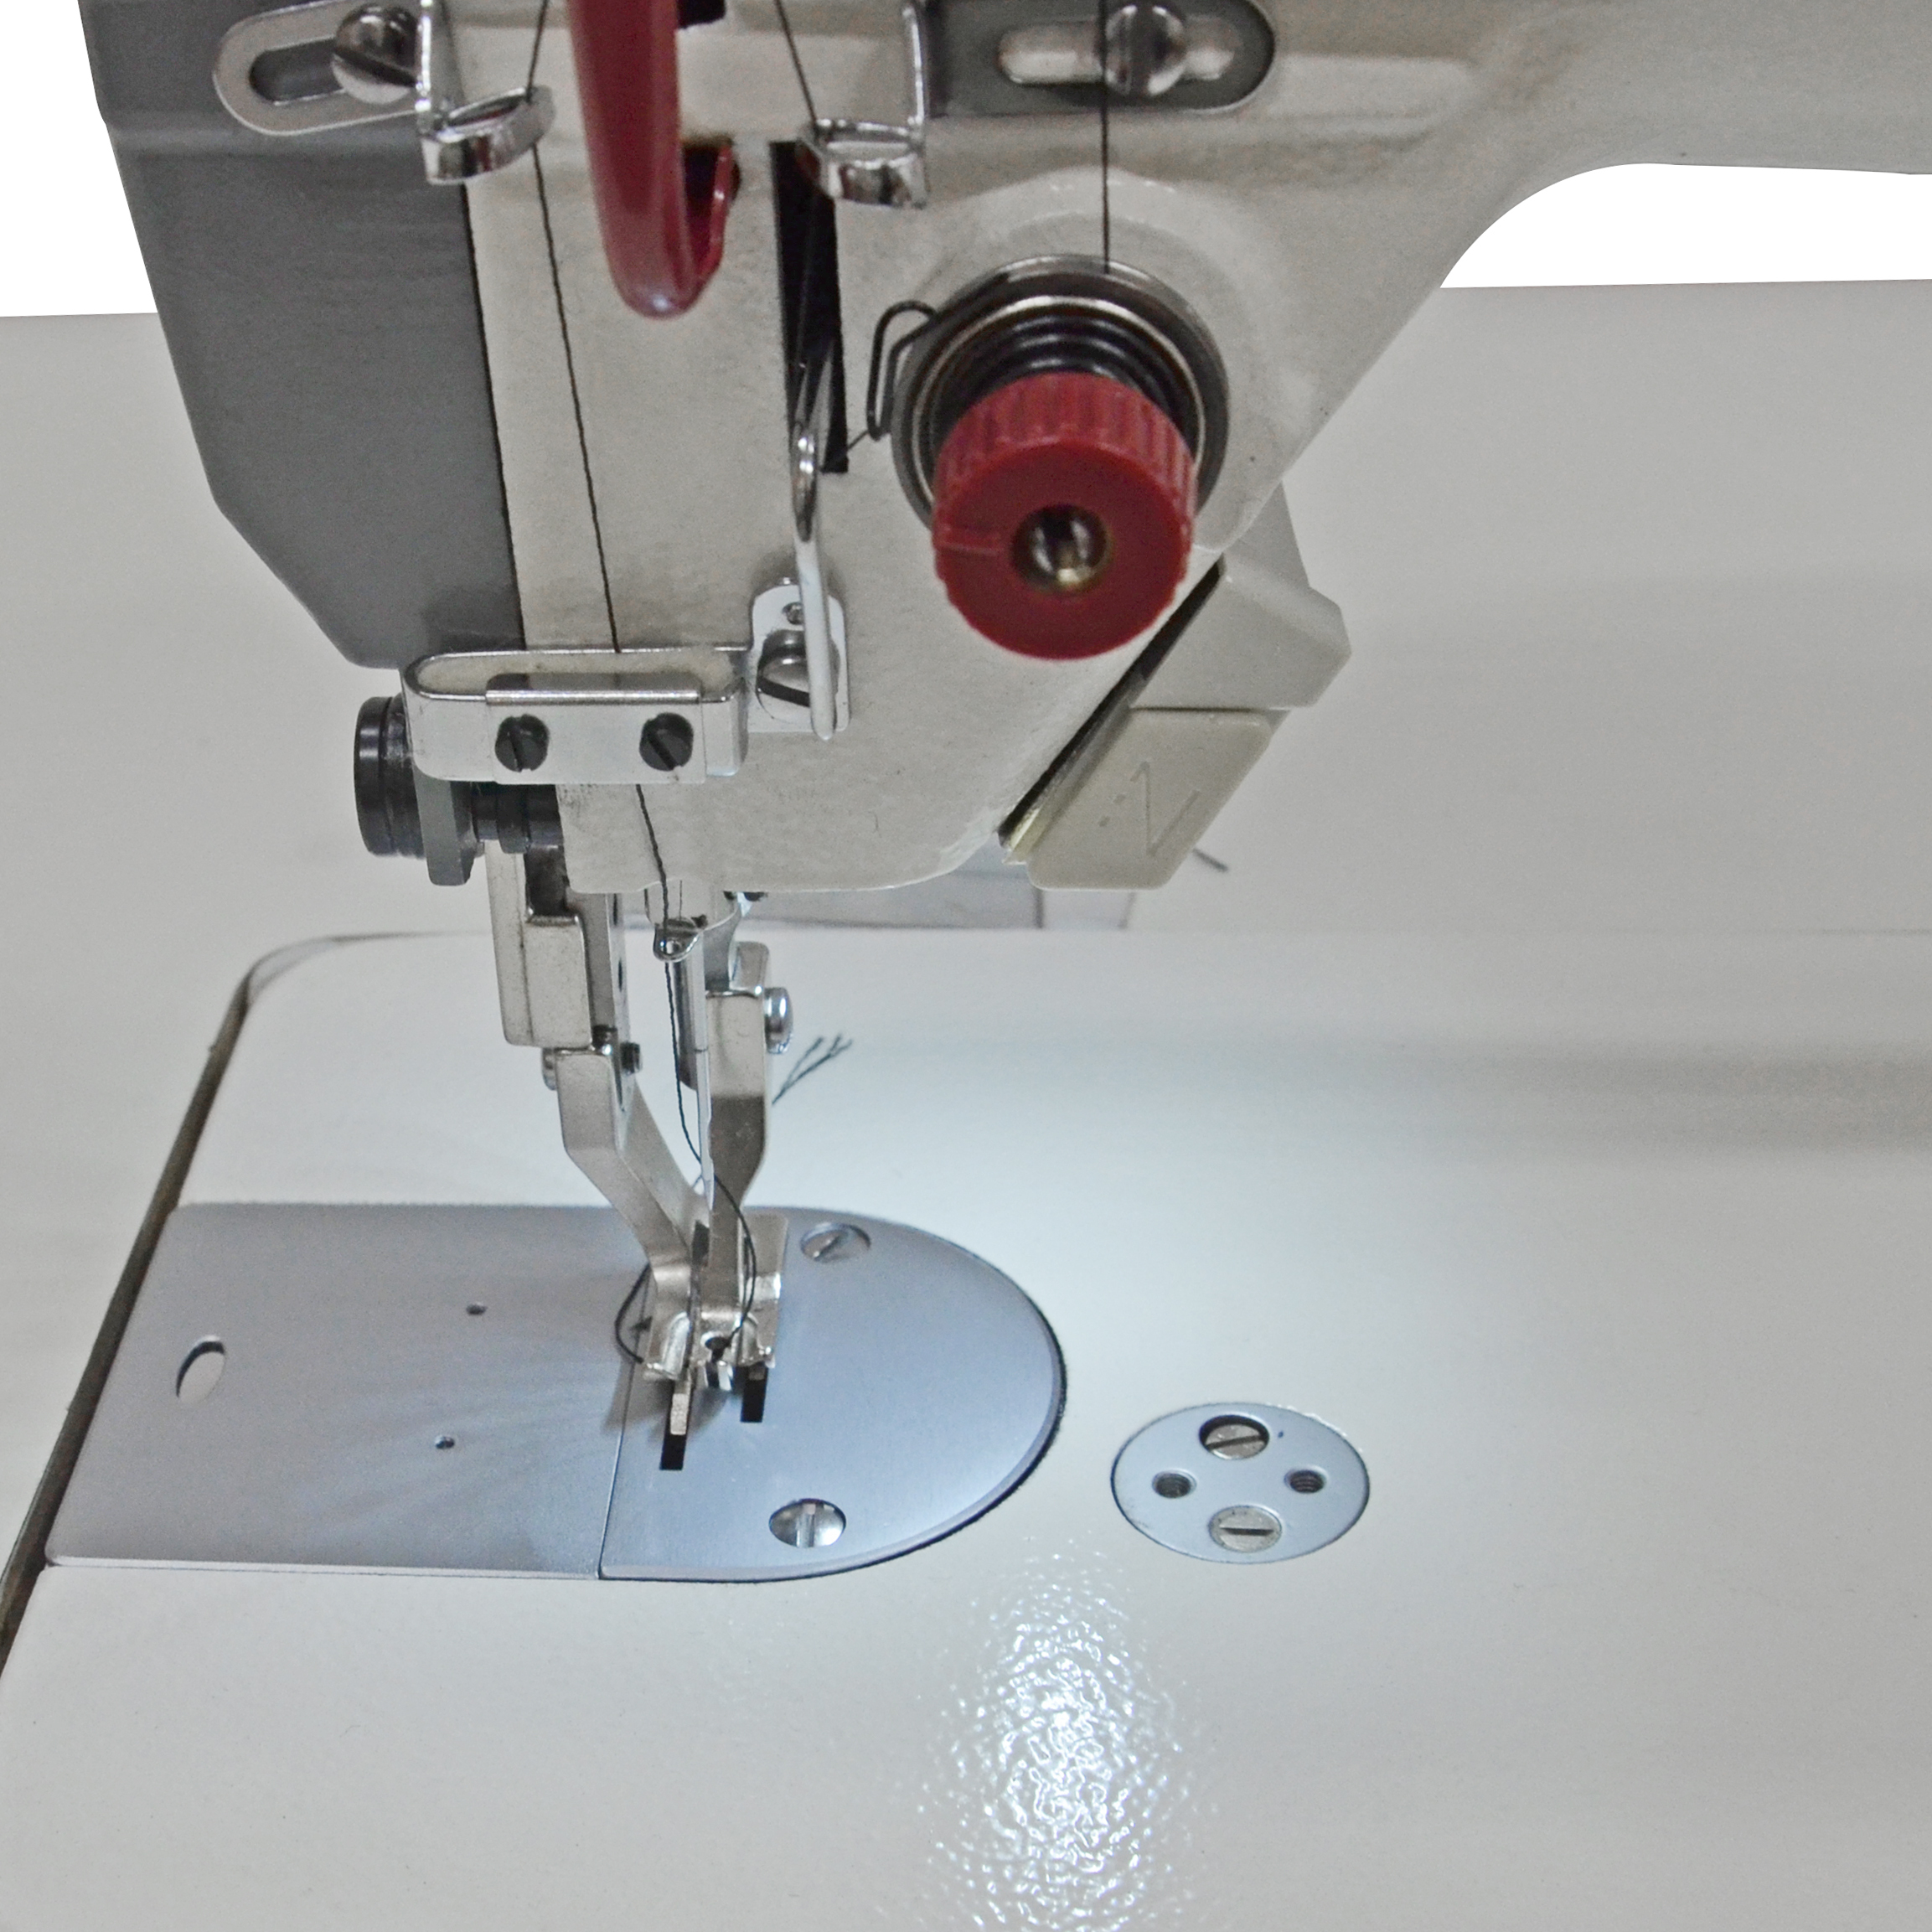 Шагающая лапка для промышленной. Промышленная швейная машина Aurora a-0302de. Прямострочная Промышленная швейная машина с шагающей лапкой Aurora a-0302e. Промышленная швейная машина Aurora 0302.